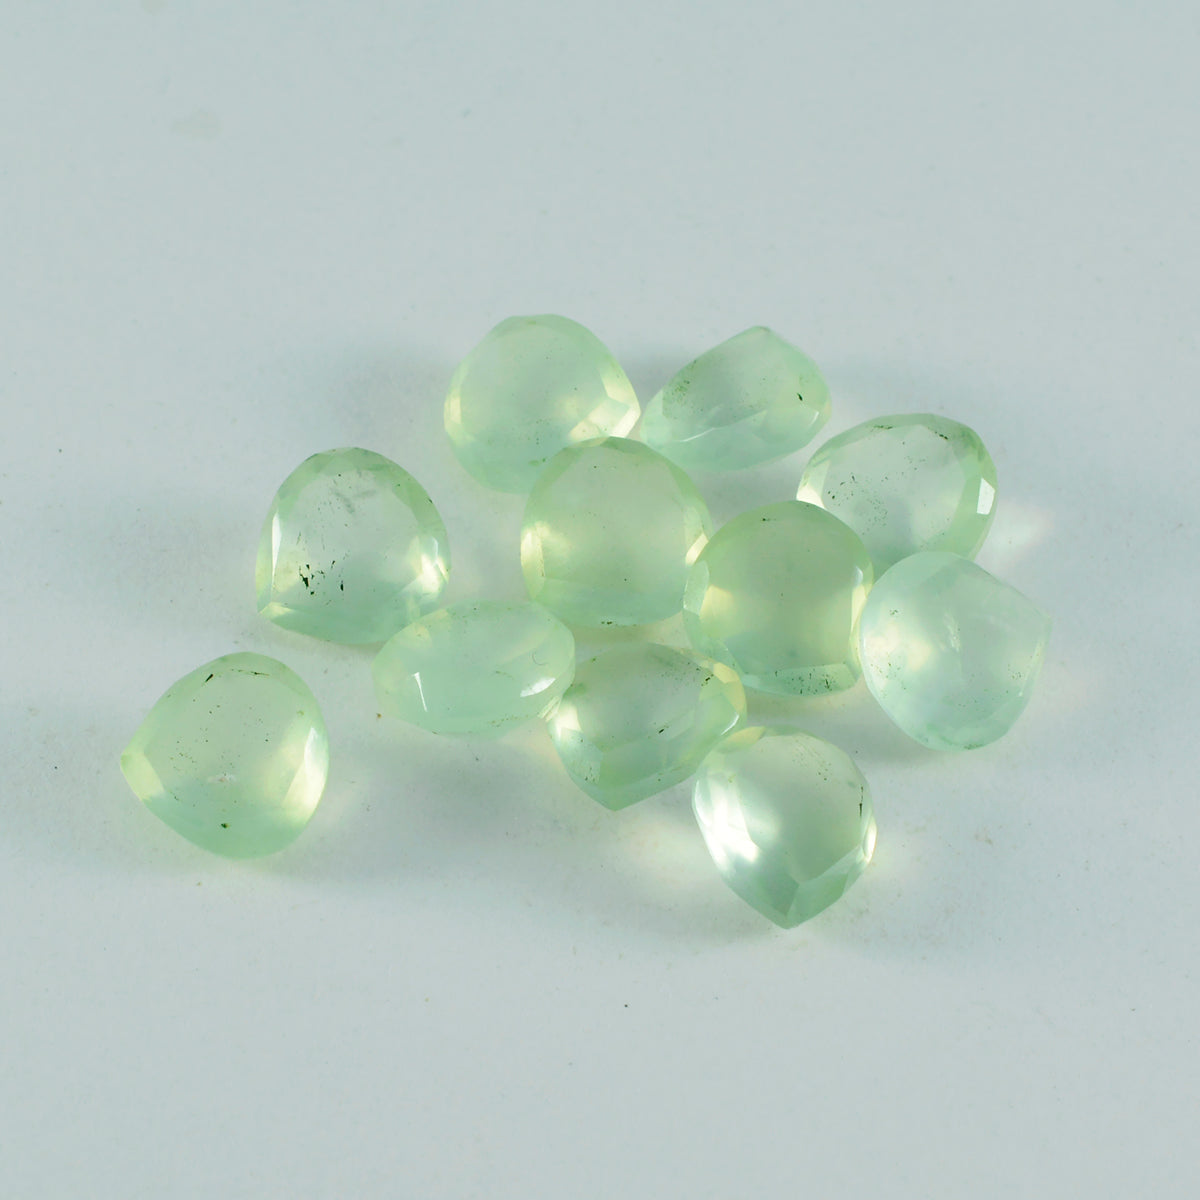 Riyogems 1pc préhnite verte à facettes 7x7mm forme de coeur beauté qualité pierre précieuse en vrac